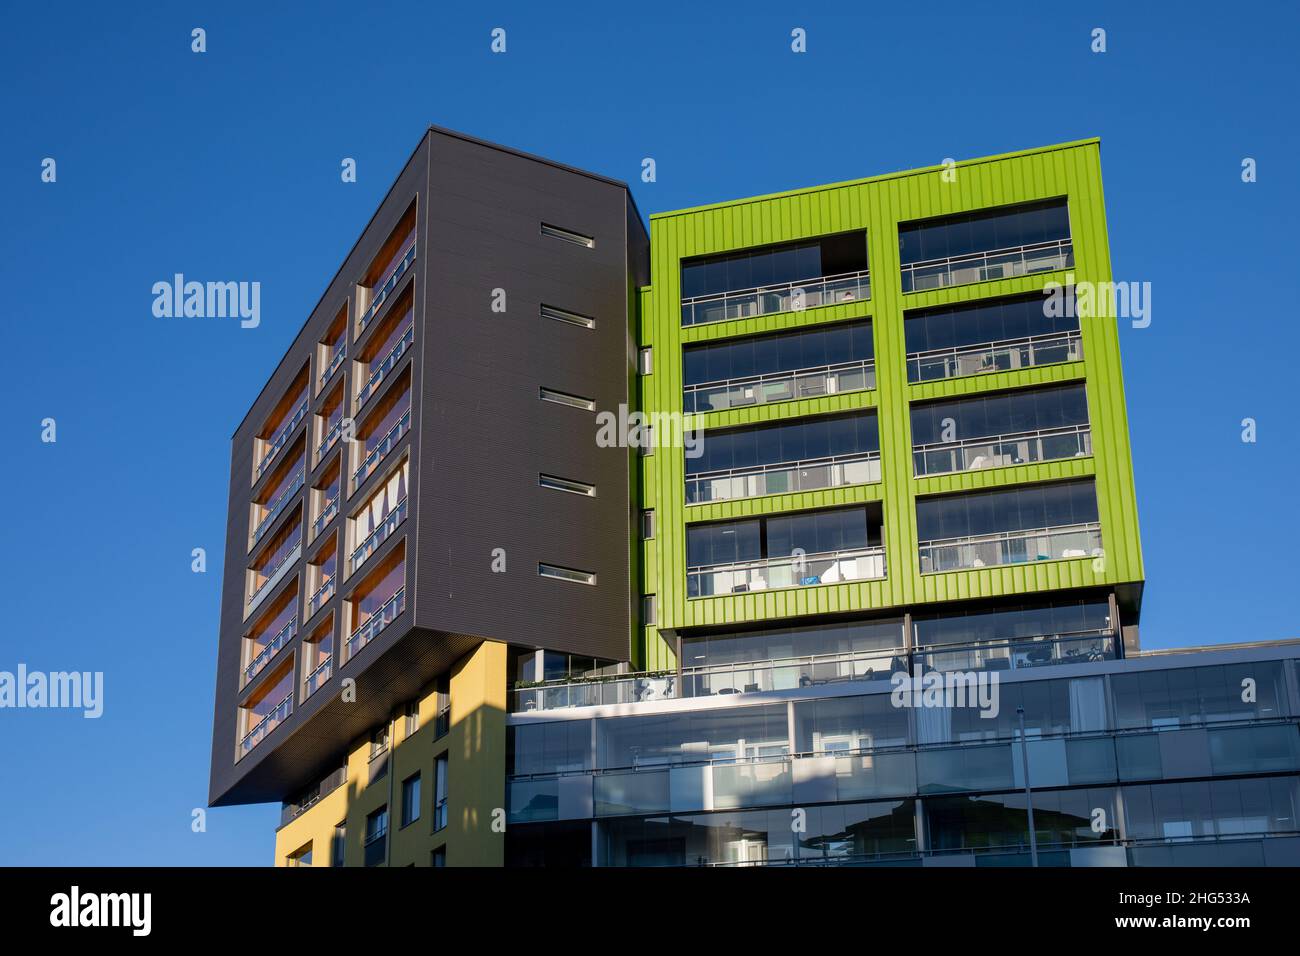 Quartier de Konepaja architecture contemporaine au ciel bleu clair à Helsinki, en Finlande Banque D'Images